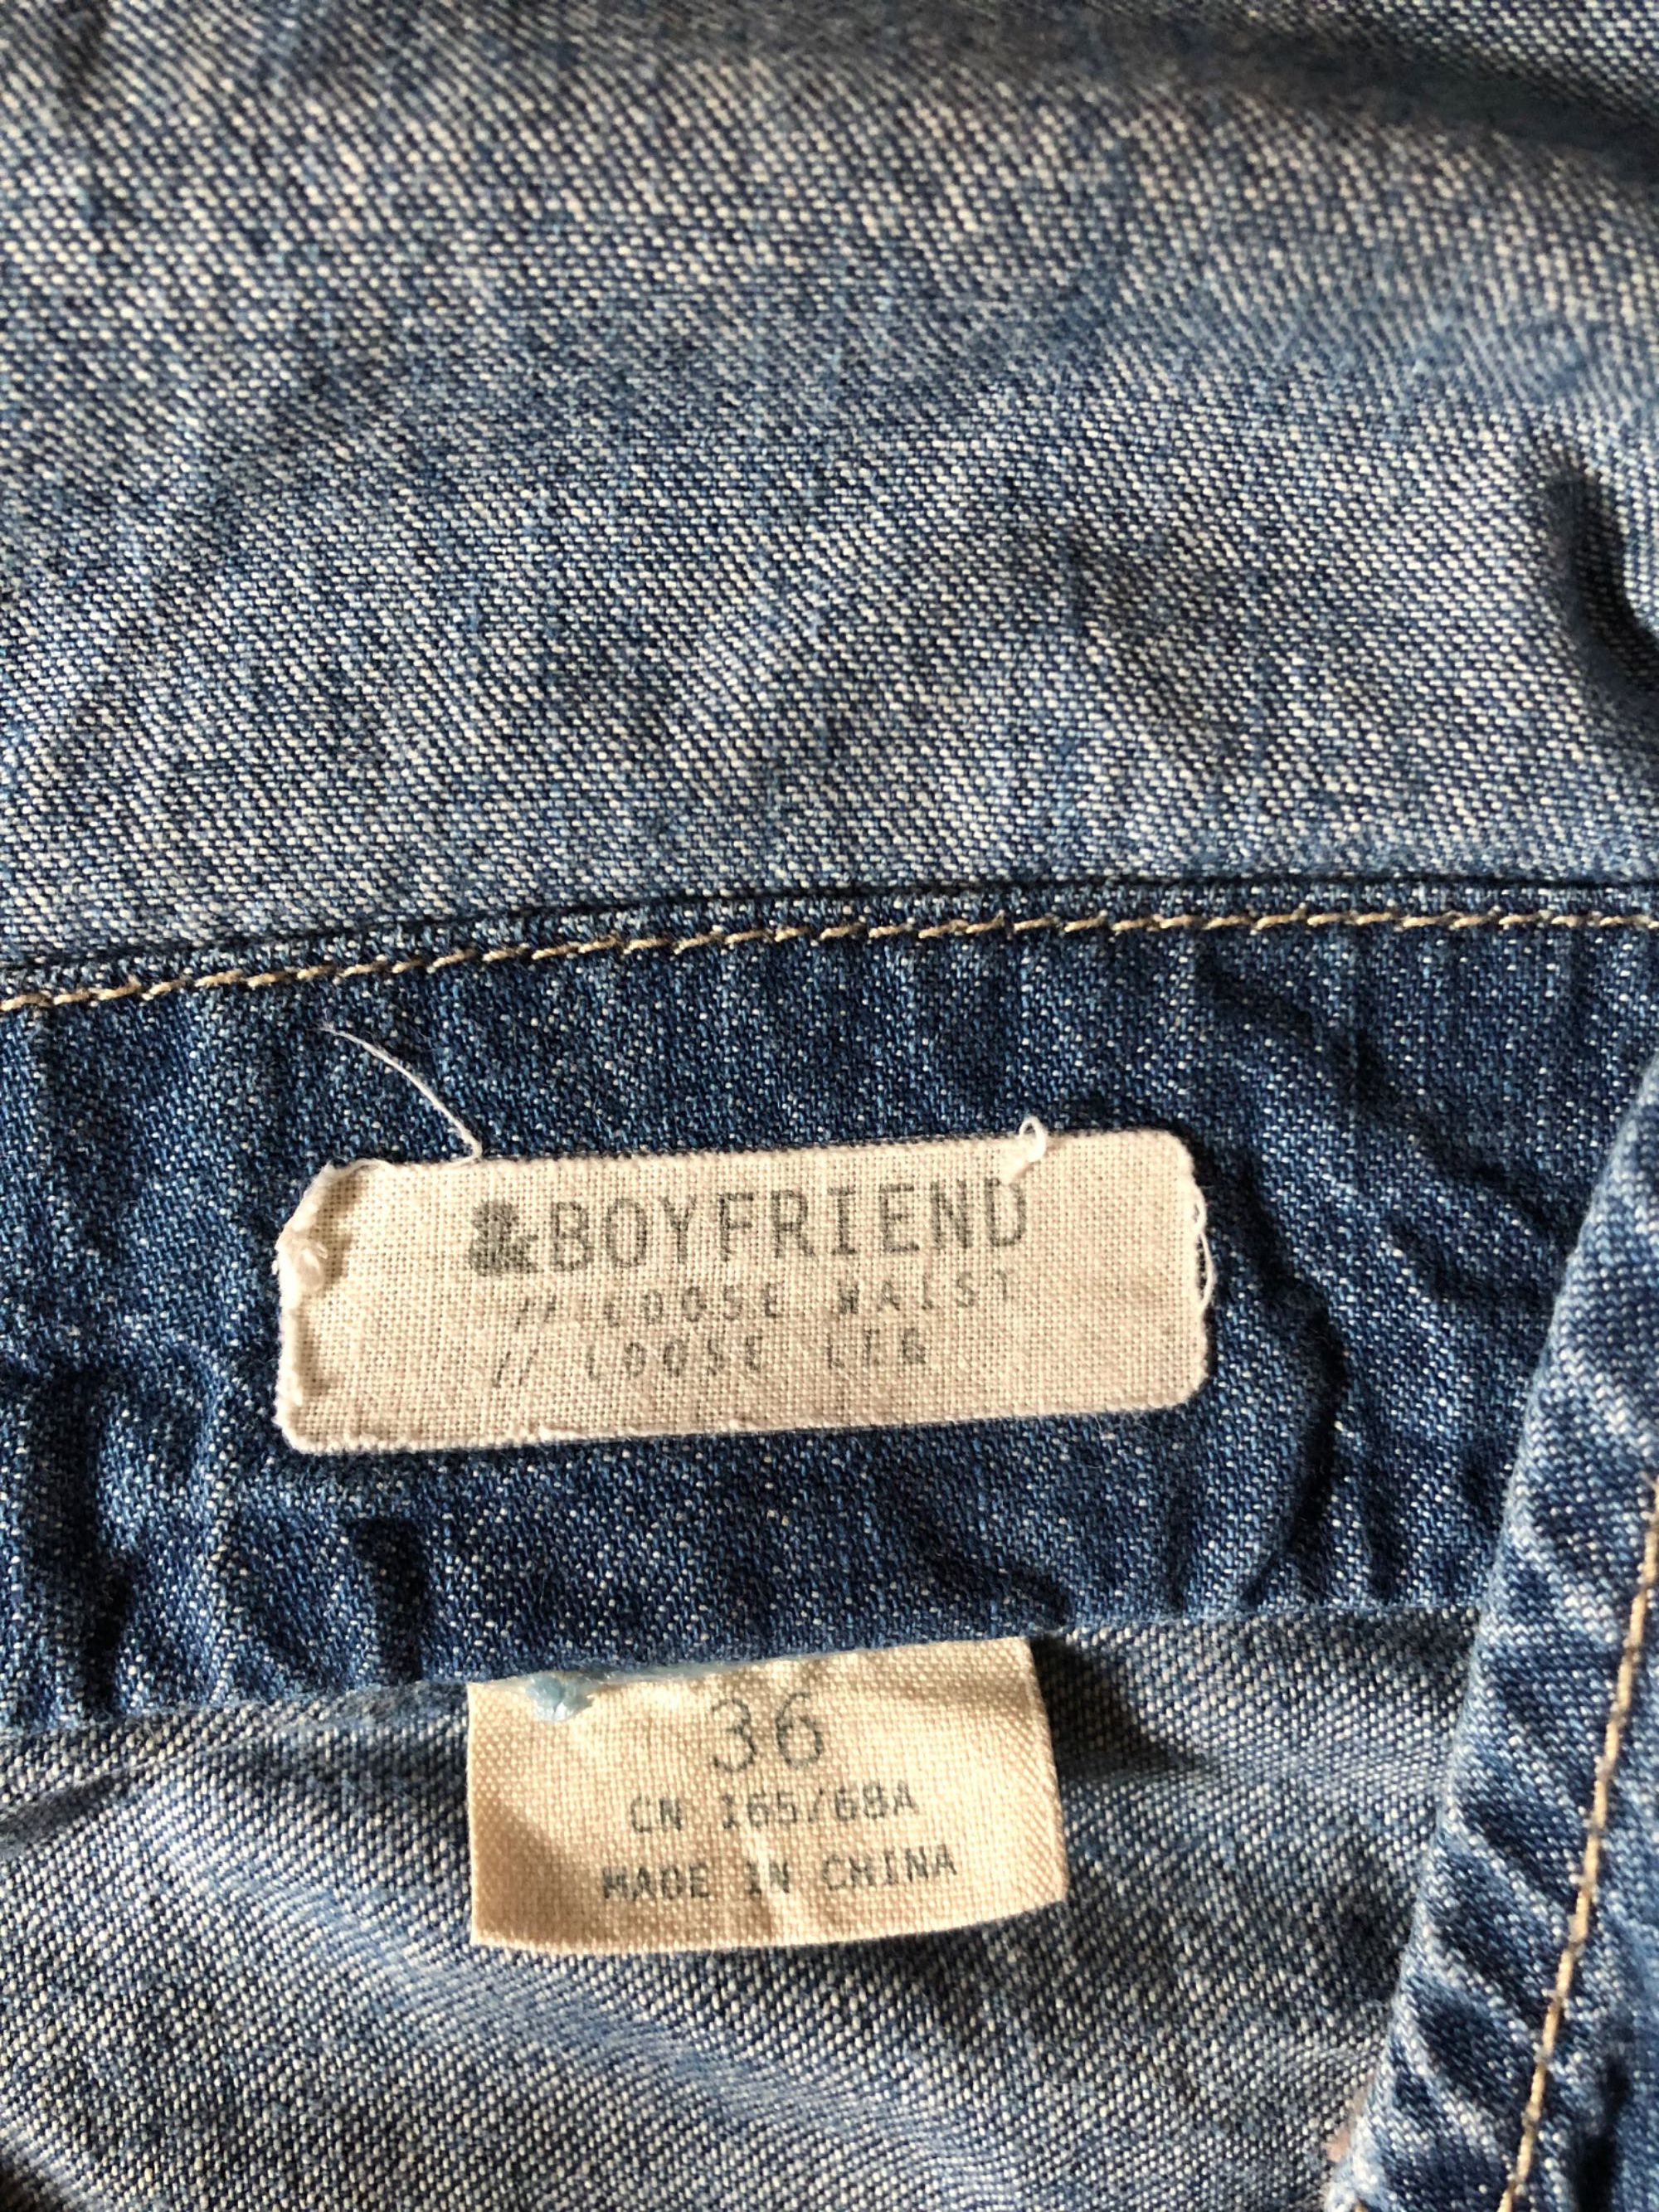 Spodnie na szelkach, jeansowe ogrodniczki H&M, rozmiar S